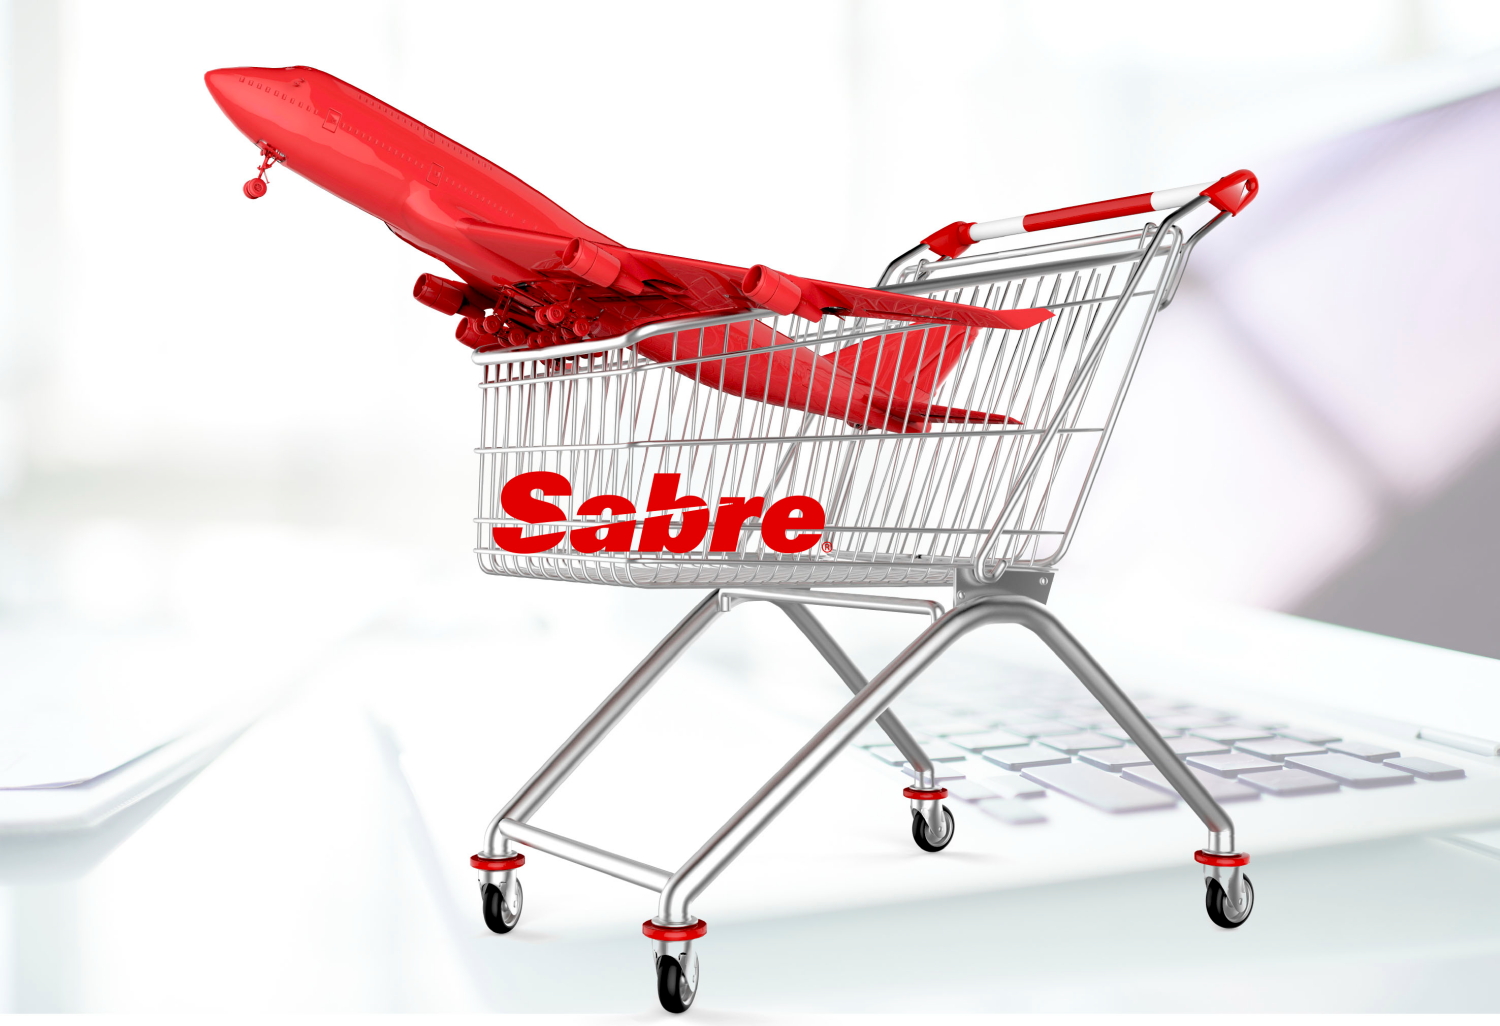 Αποτέλεσμα εικόνας για Sabre helps Emirates airline enhance traveller experience using merchandising technology